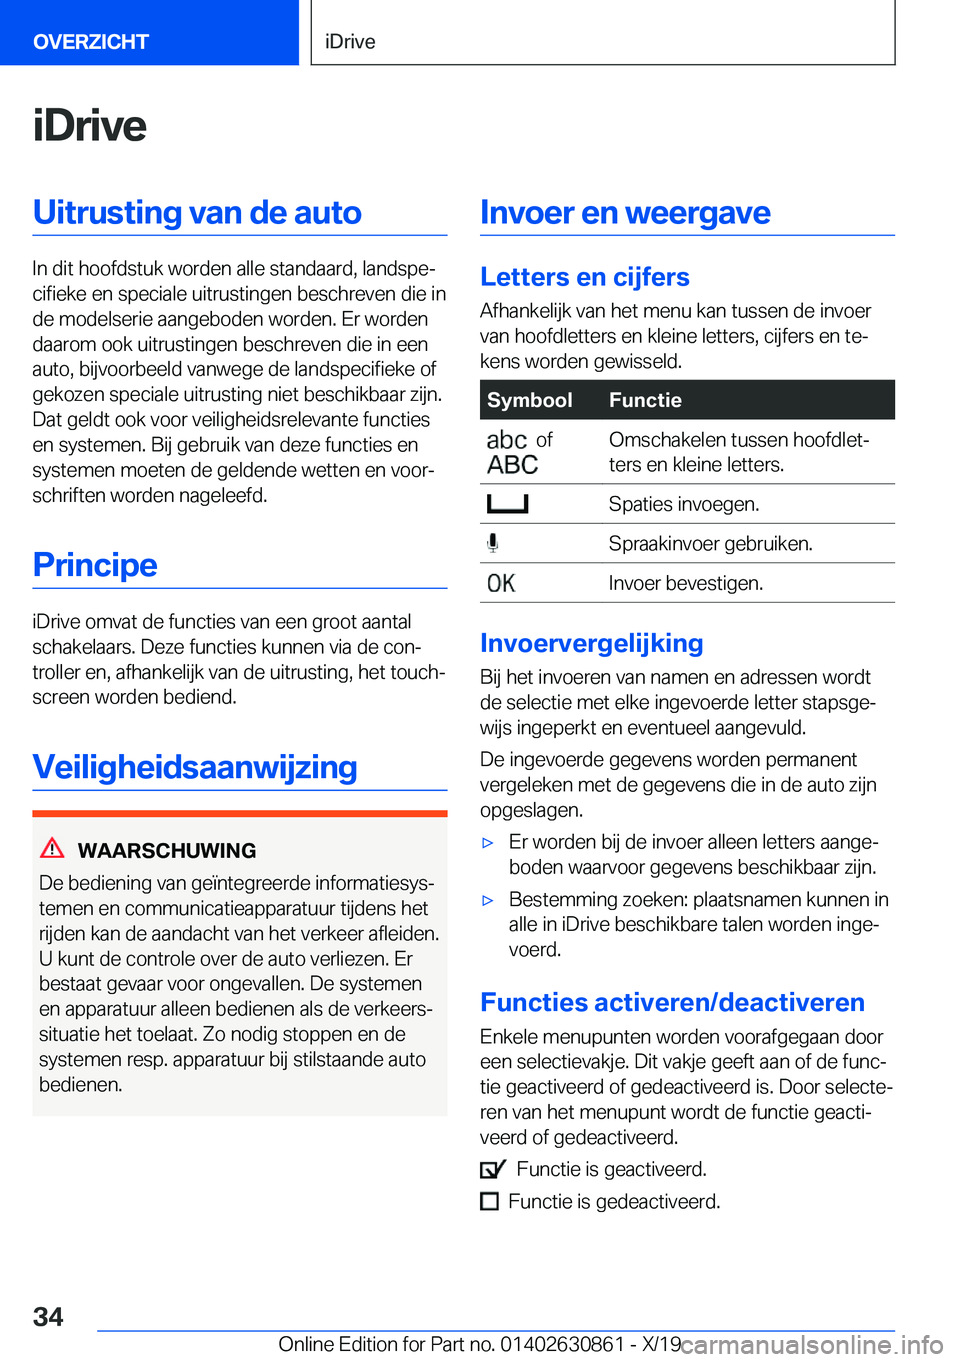 BMW 4 SERIES GRAN COUPE 2020  Instructieboekjes (in Dutch) �i�D�r�i�v�e�U�i�t�r�u�s�t�i�n�g��v�a�n��d�e��a�u�t�o
�I�n��d�i�t��h�o�o�f�d�s�t�u�k��w�o�r�d�e�n��a�l�l�e��s�t�a�n�d�a�a�r�d�,��l�a�n�d�s�p�ej�c�i�f�i�e�k�e��e�n��s�p�e�c�i�a�l�e��u�i�t�